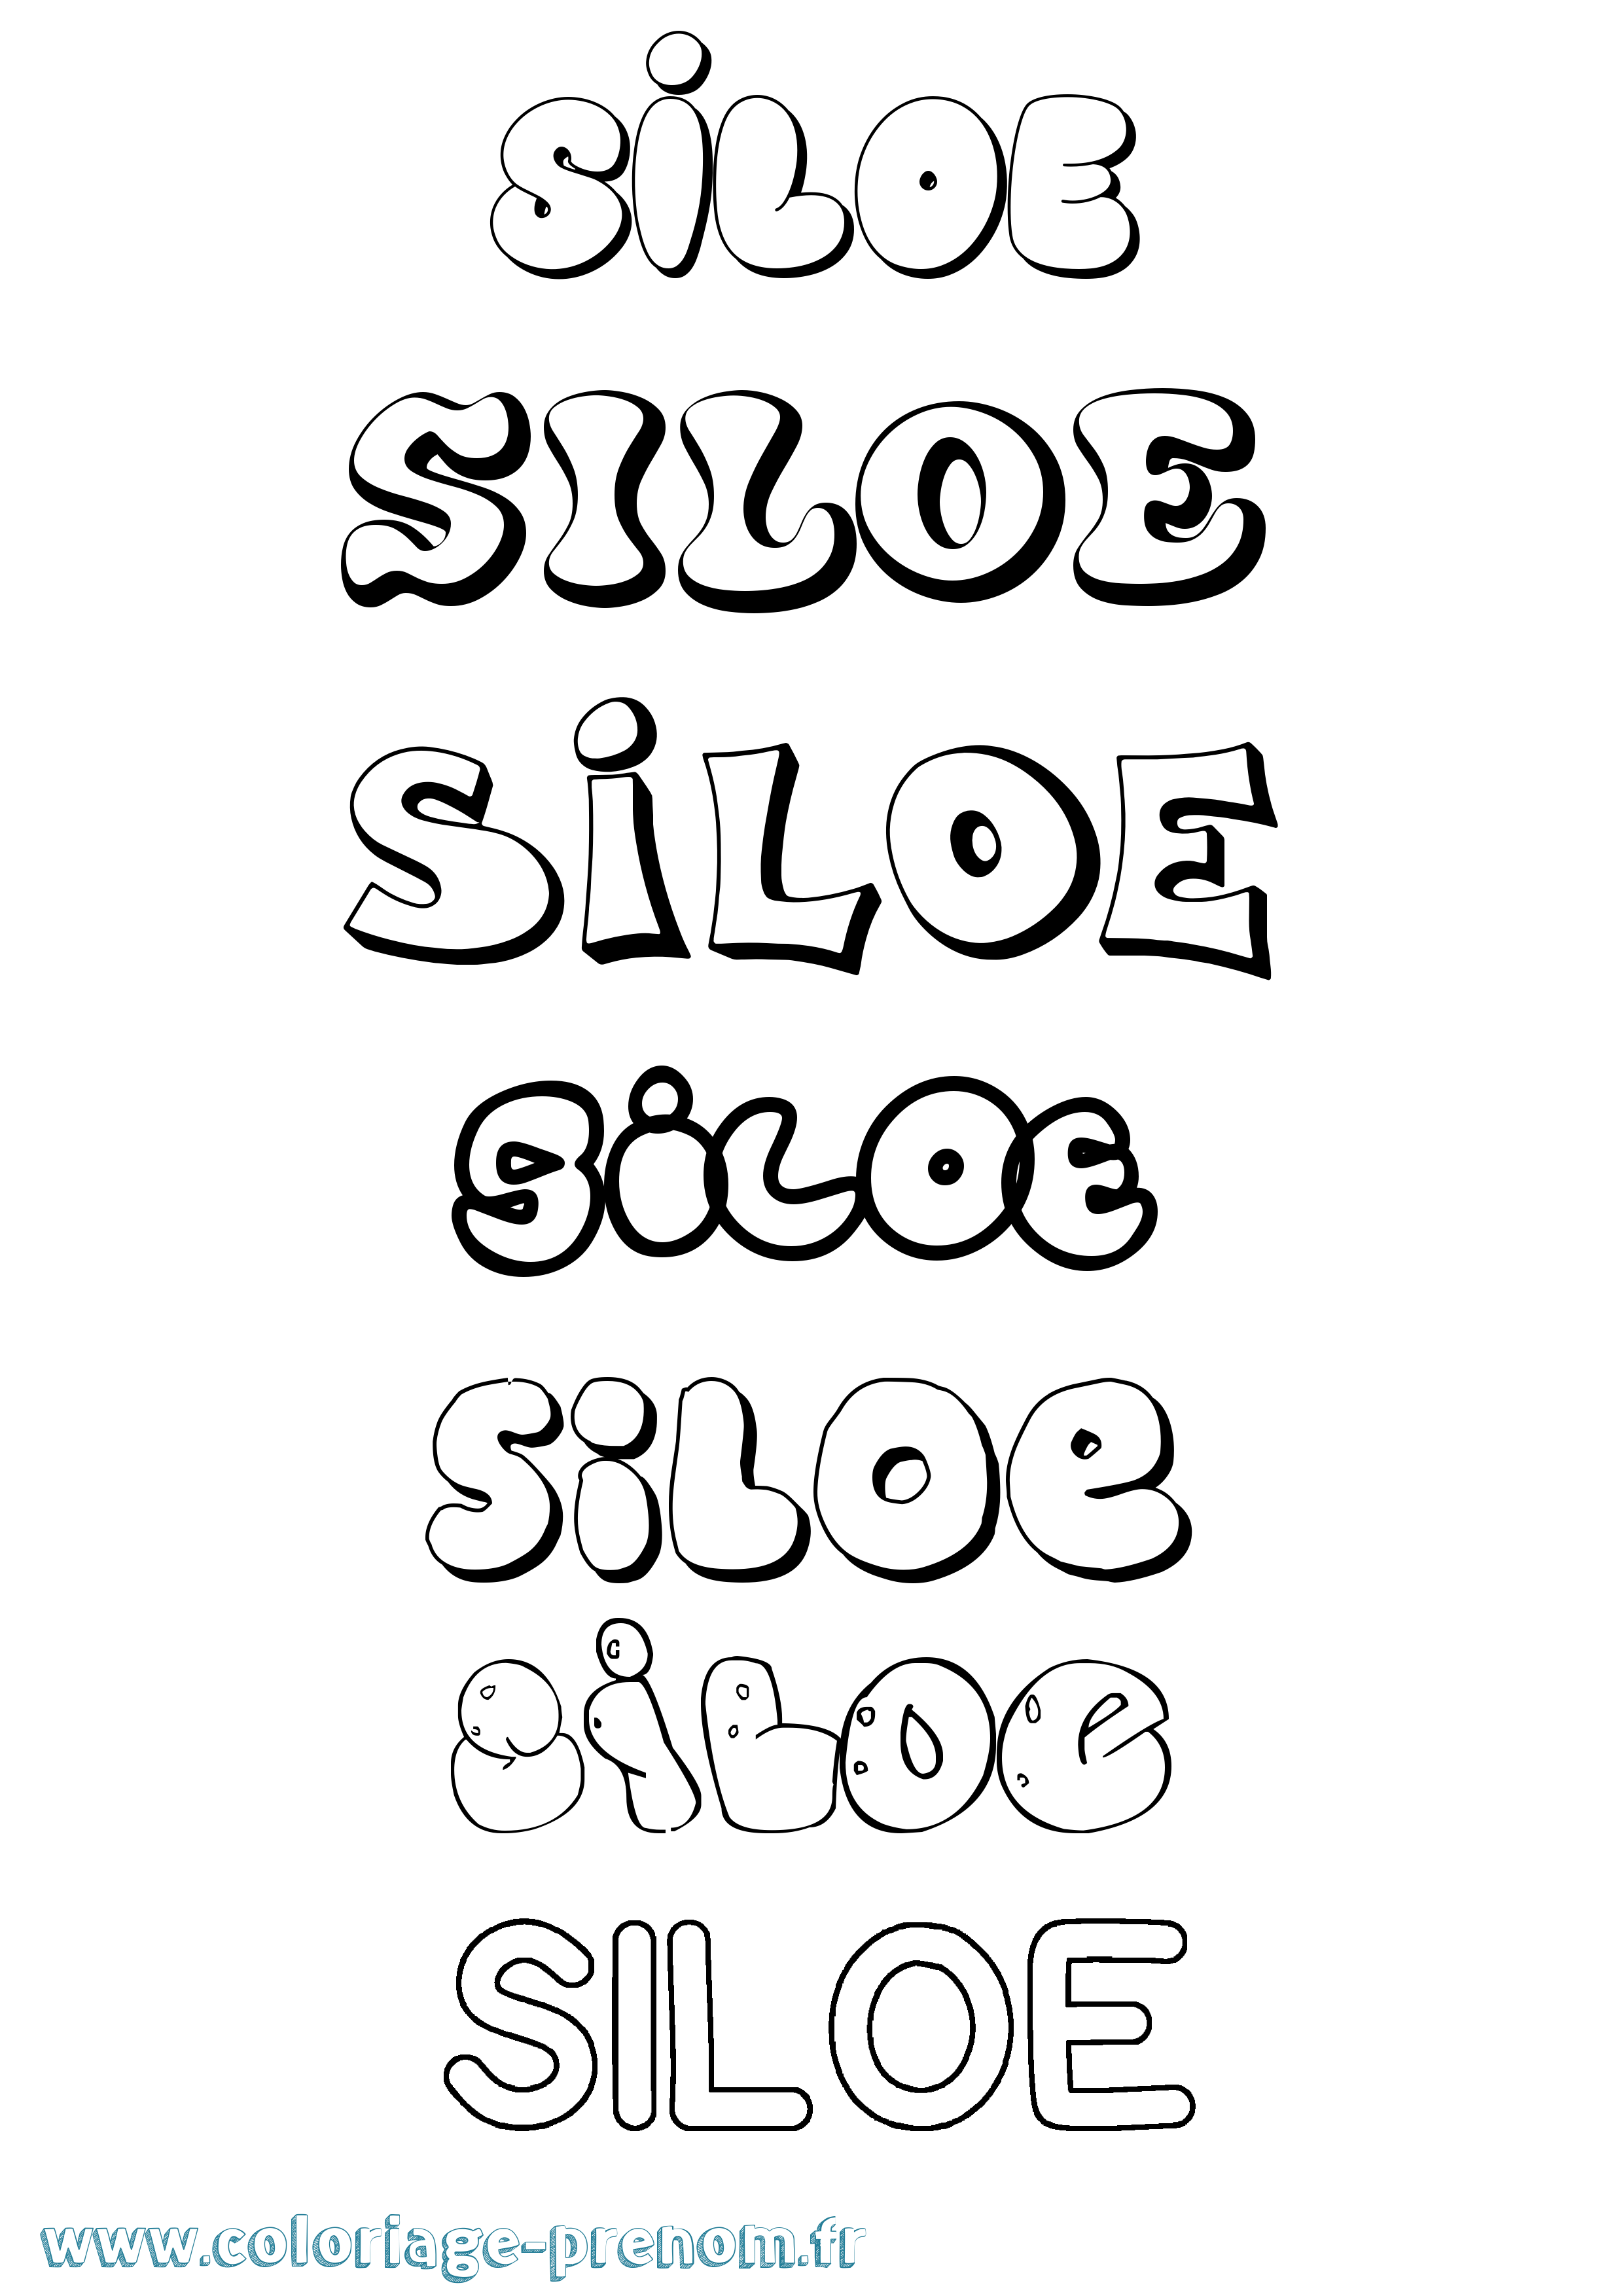 Coloriage prénom Siloe Bubble